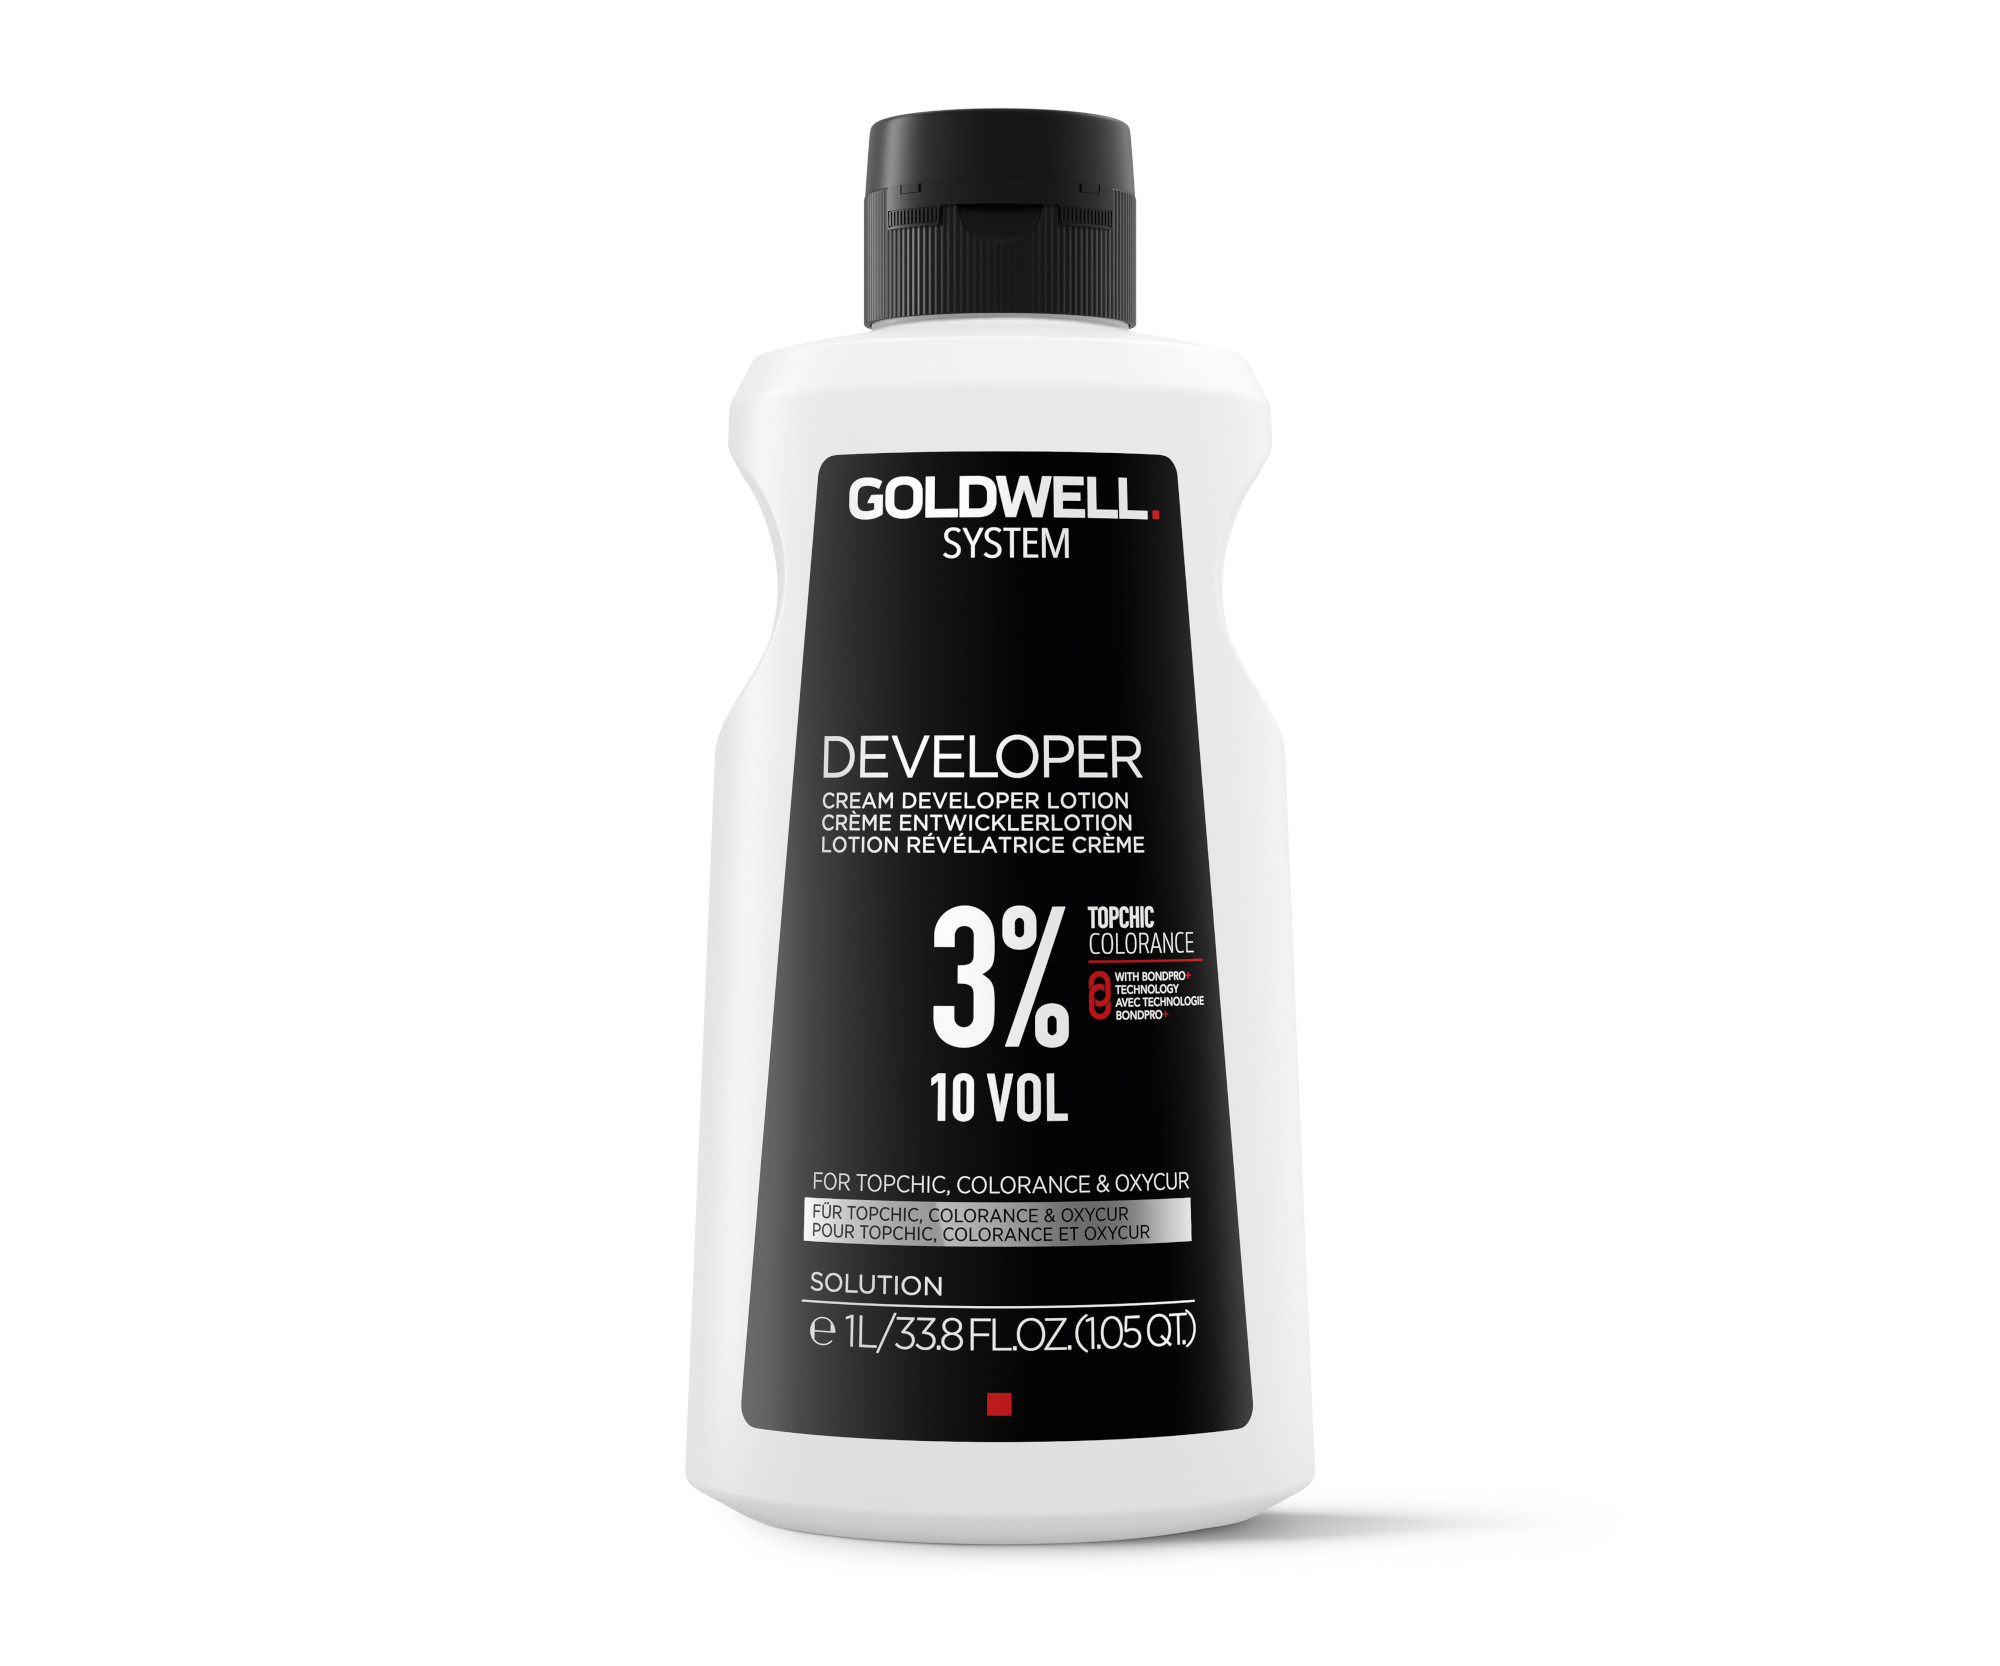 Oxidační krém Goldwell System Developer 10 VOL 3% - 1000 ml (266161) + DÁREK ZDARMA